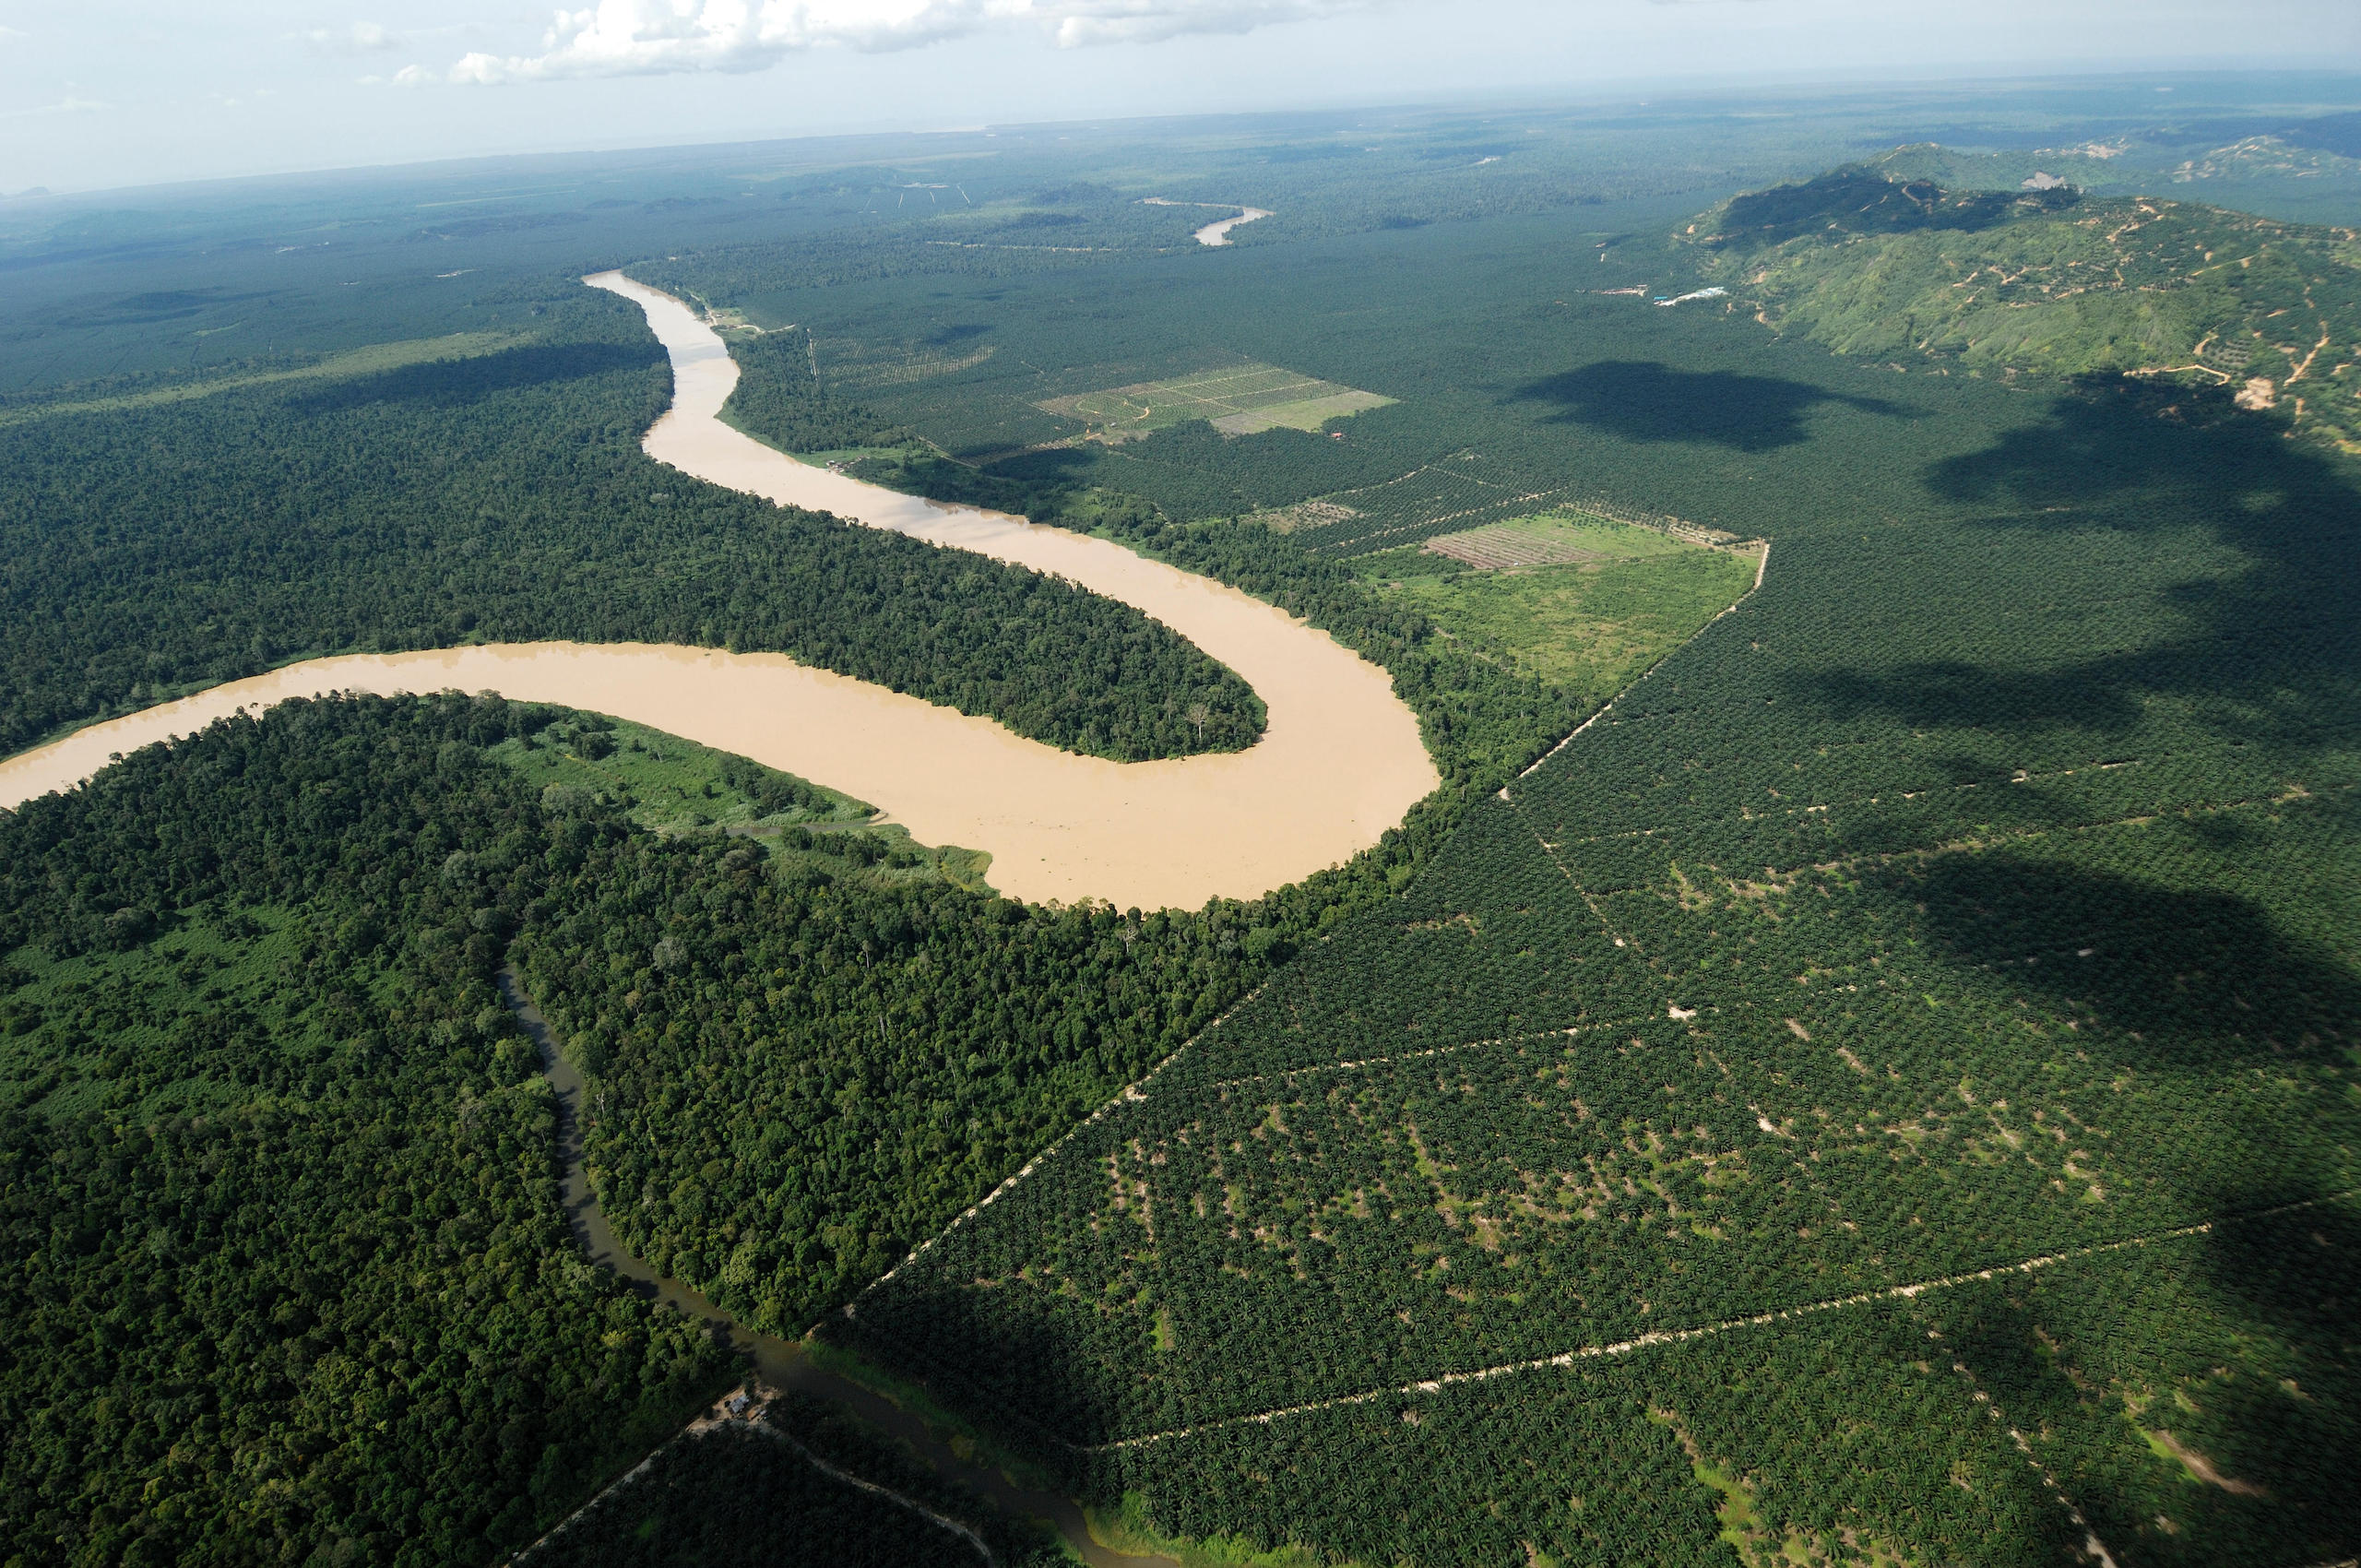 Widok z lotu ptaka na zakole rzeki otoczone lasami deszczowymi i plantacjami roślin uprawnych